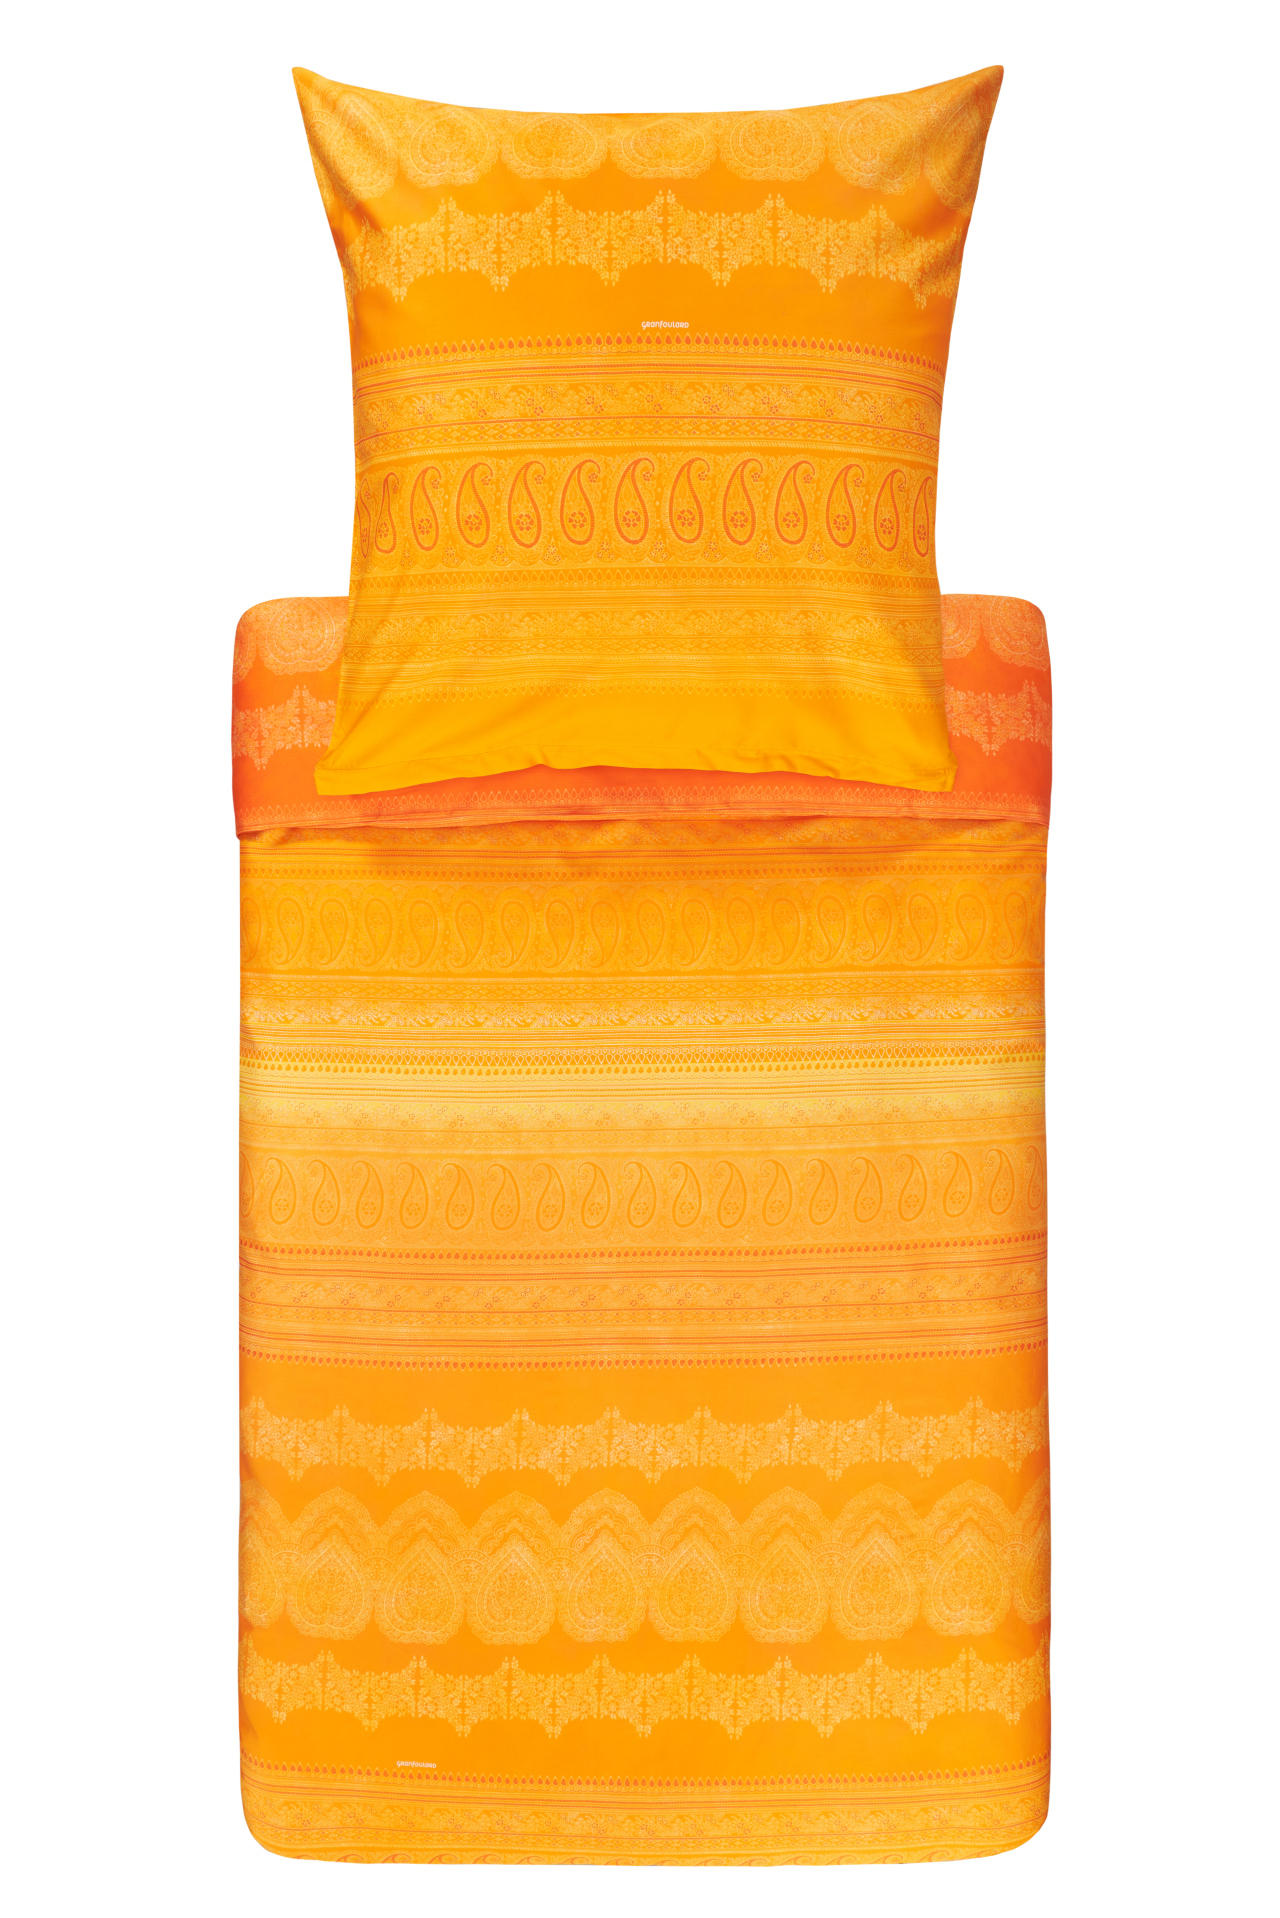 BETTWÄSCHE BRUNELLESCHI  - Orange, LIFESTYLE, Textil (135/200cm) - Bassetti